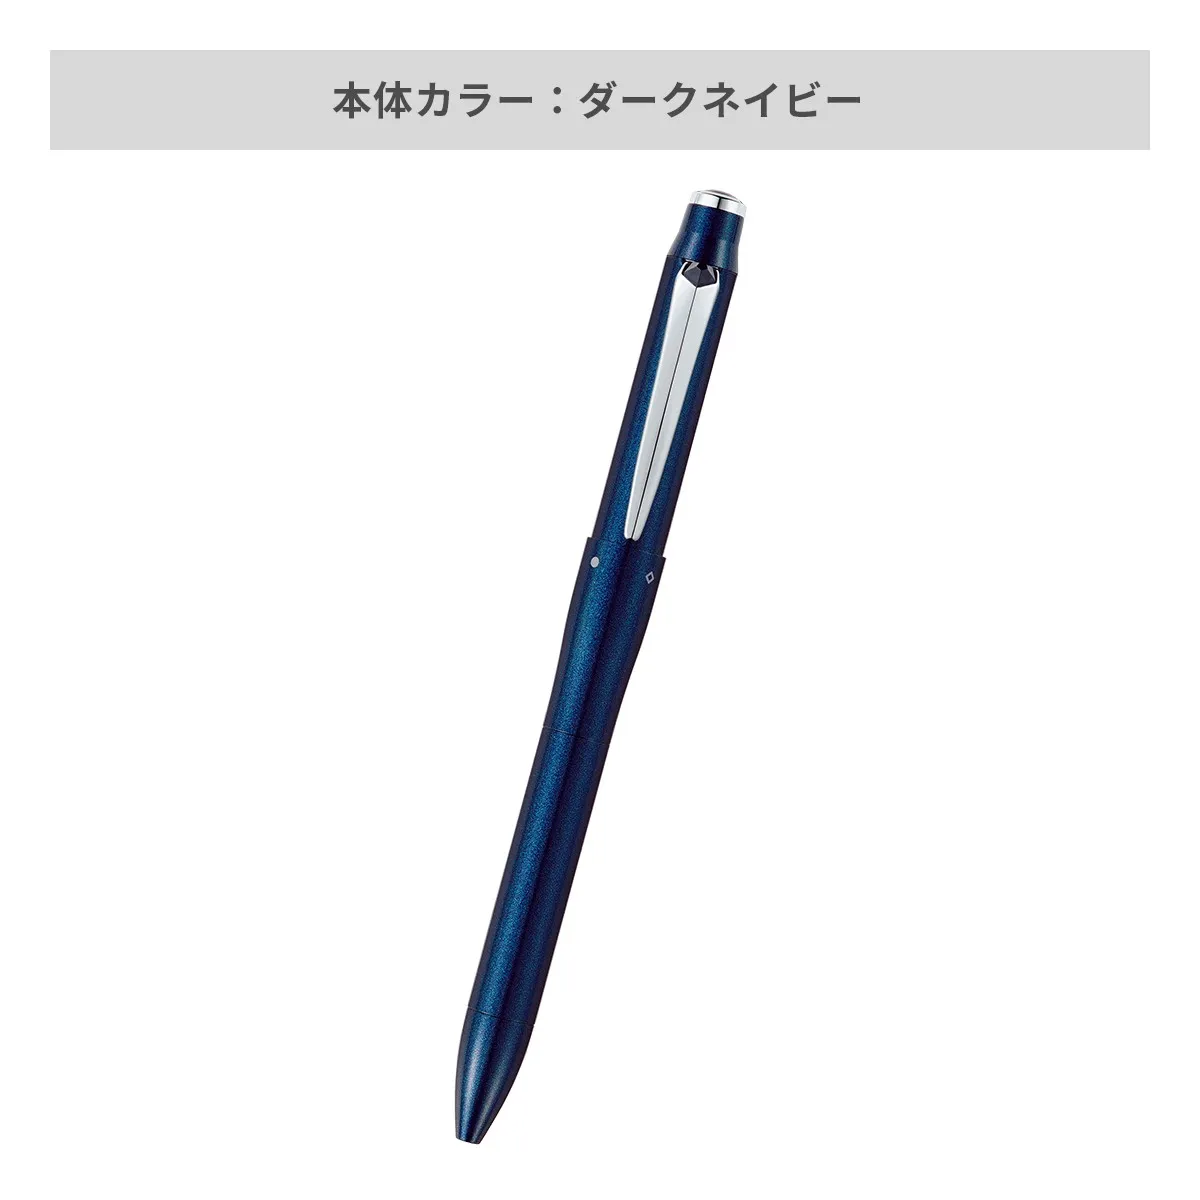 【短納期】三菱鉛筆 ジェットストリーム プライム 多機能ペン 3&1 0.5mm【多機能ペン / レーザー彫刻】 画像3